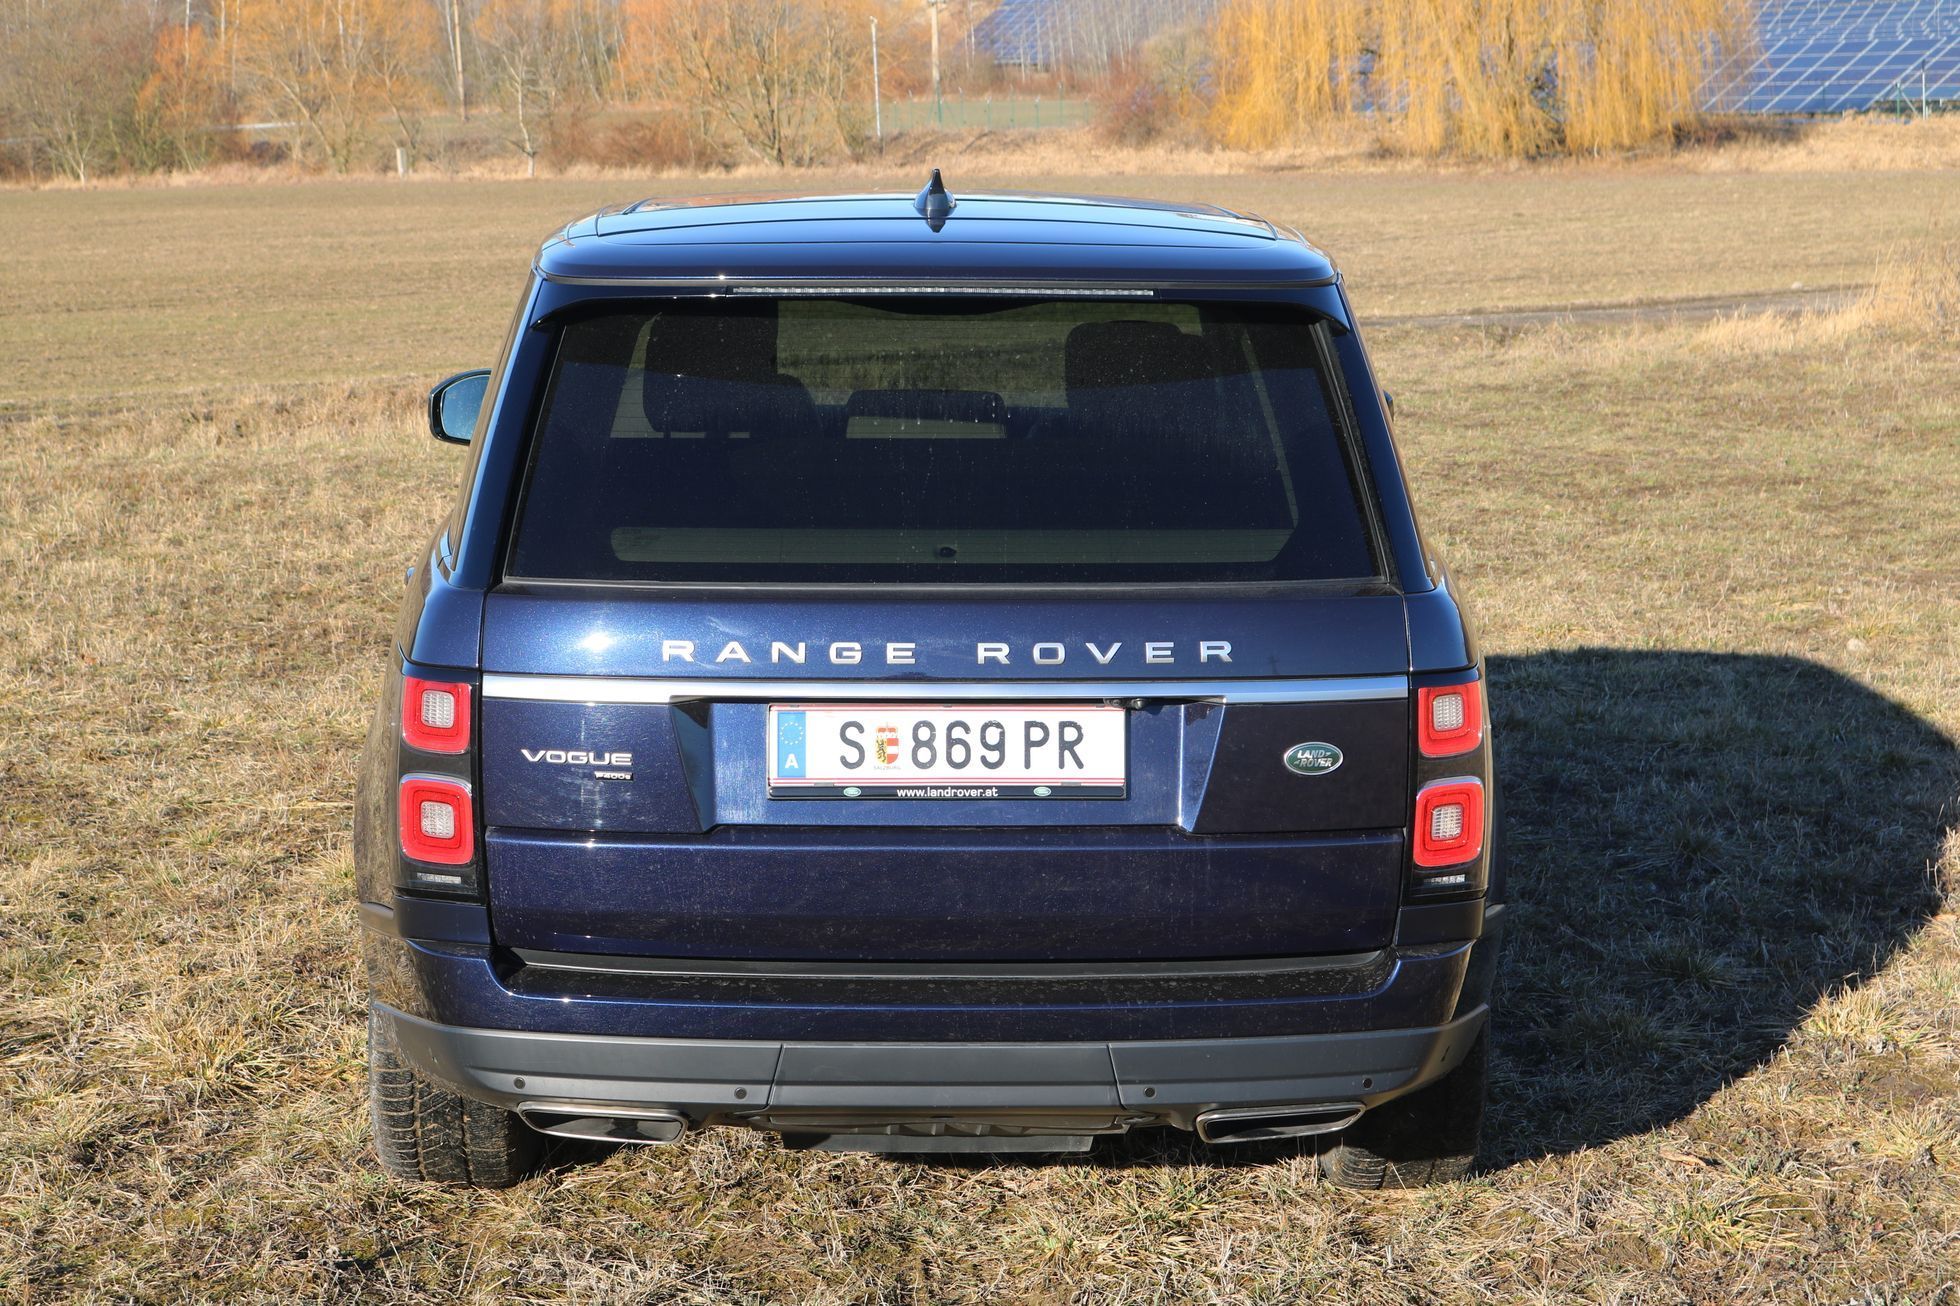 Range Rover hybrid